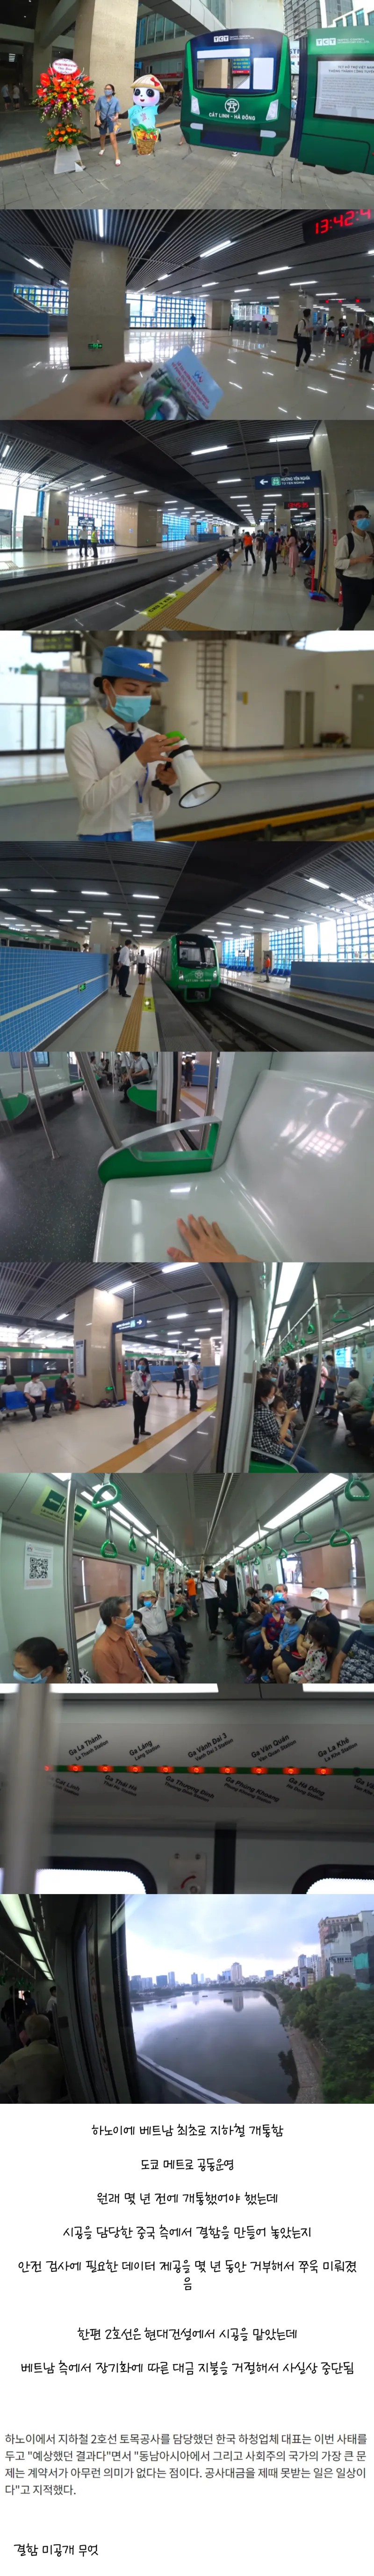 베트남 지하철 개통.jpg